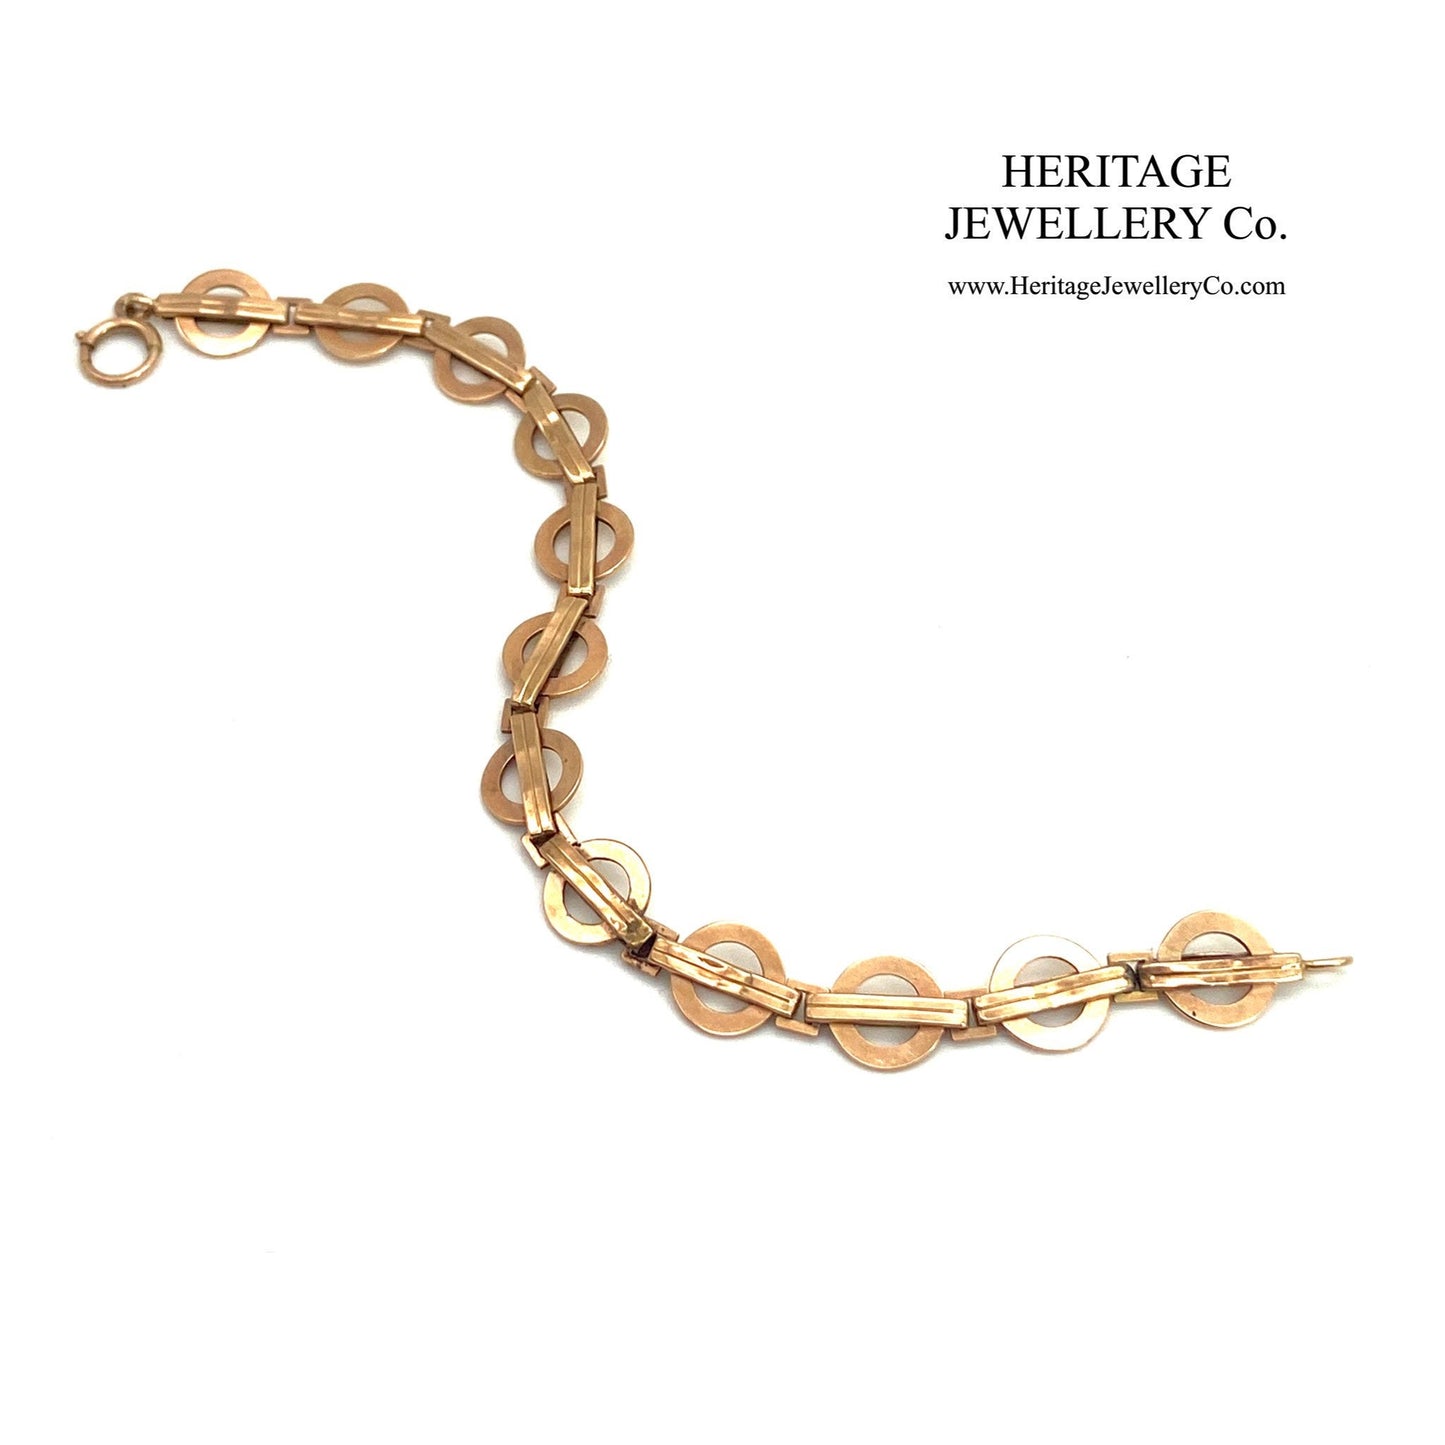 Antique Rose Gold Bracelet with Fancy Links